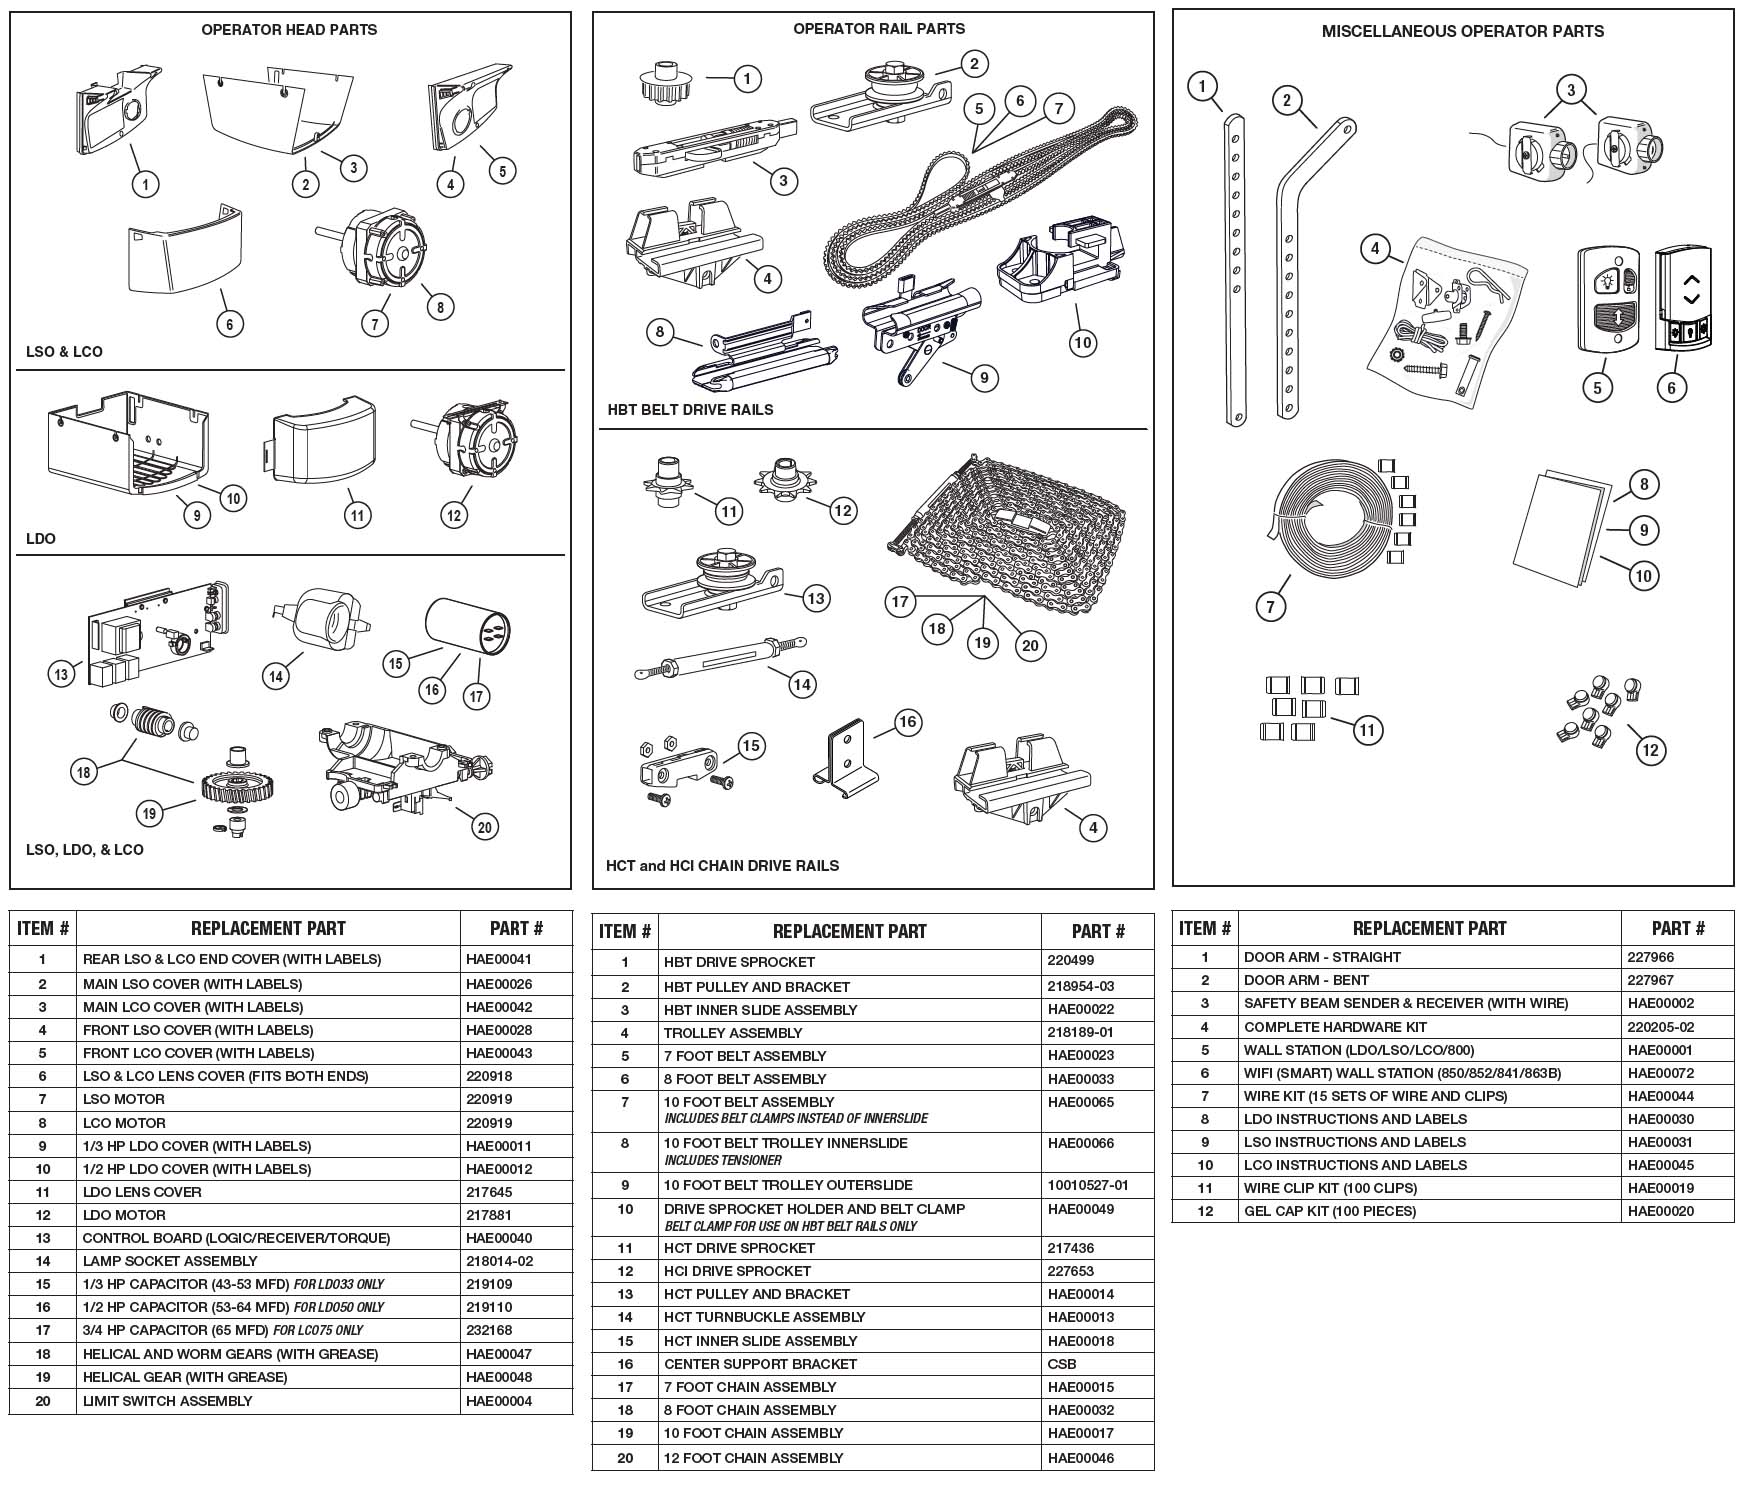 Linear LDO33 Garage Door Opener Parts Diagram and List